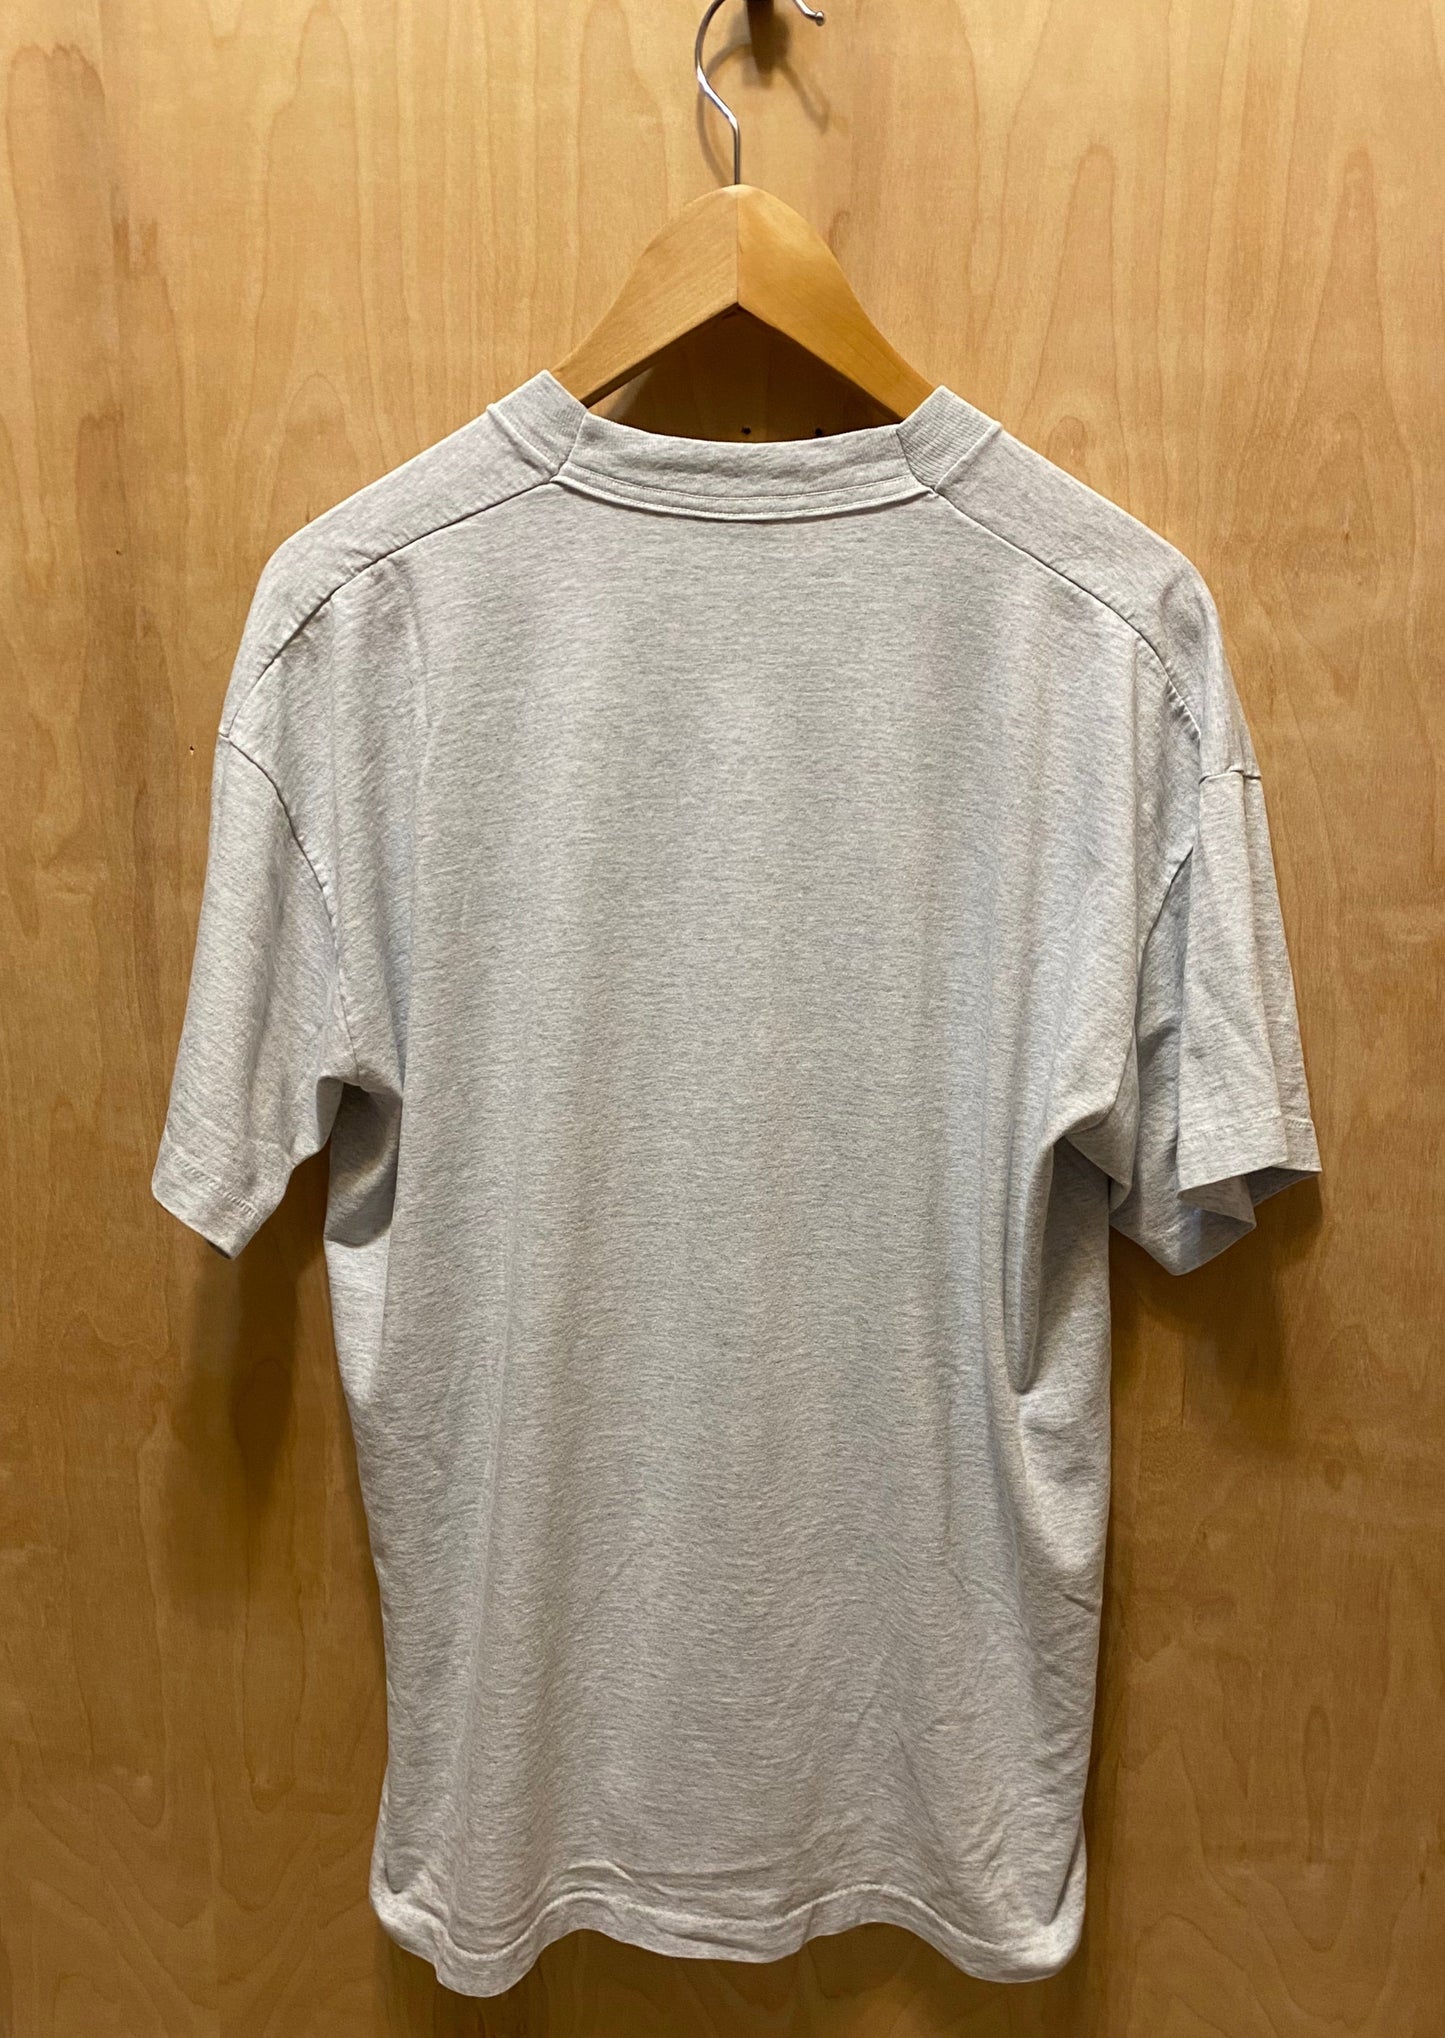 1996 Wildwood "Jersey Elks" T-Shirt (XL)